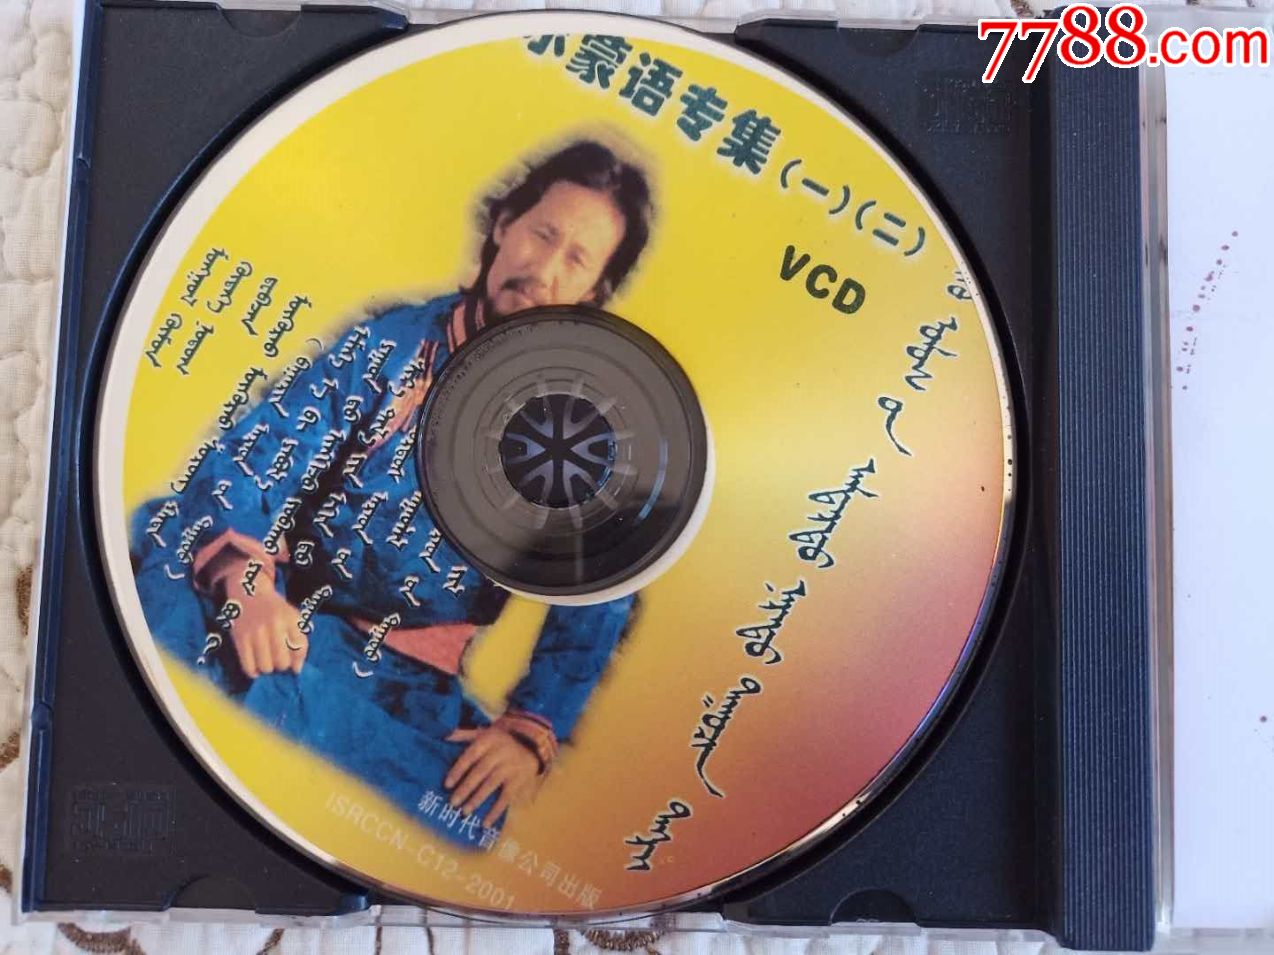 腾格尔早期蒙古语歌曲CD